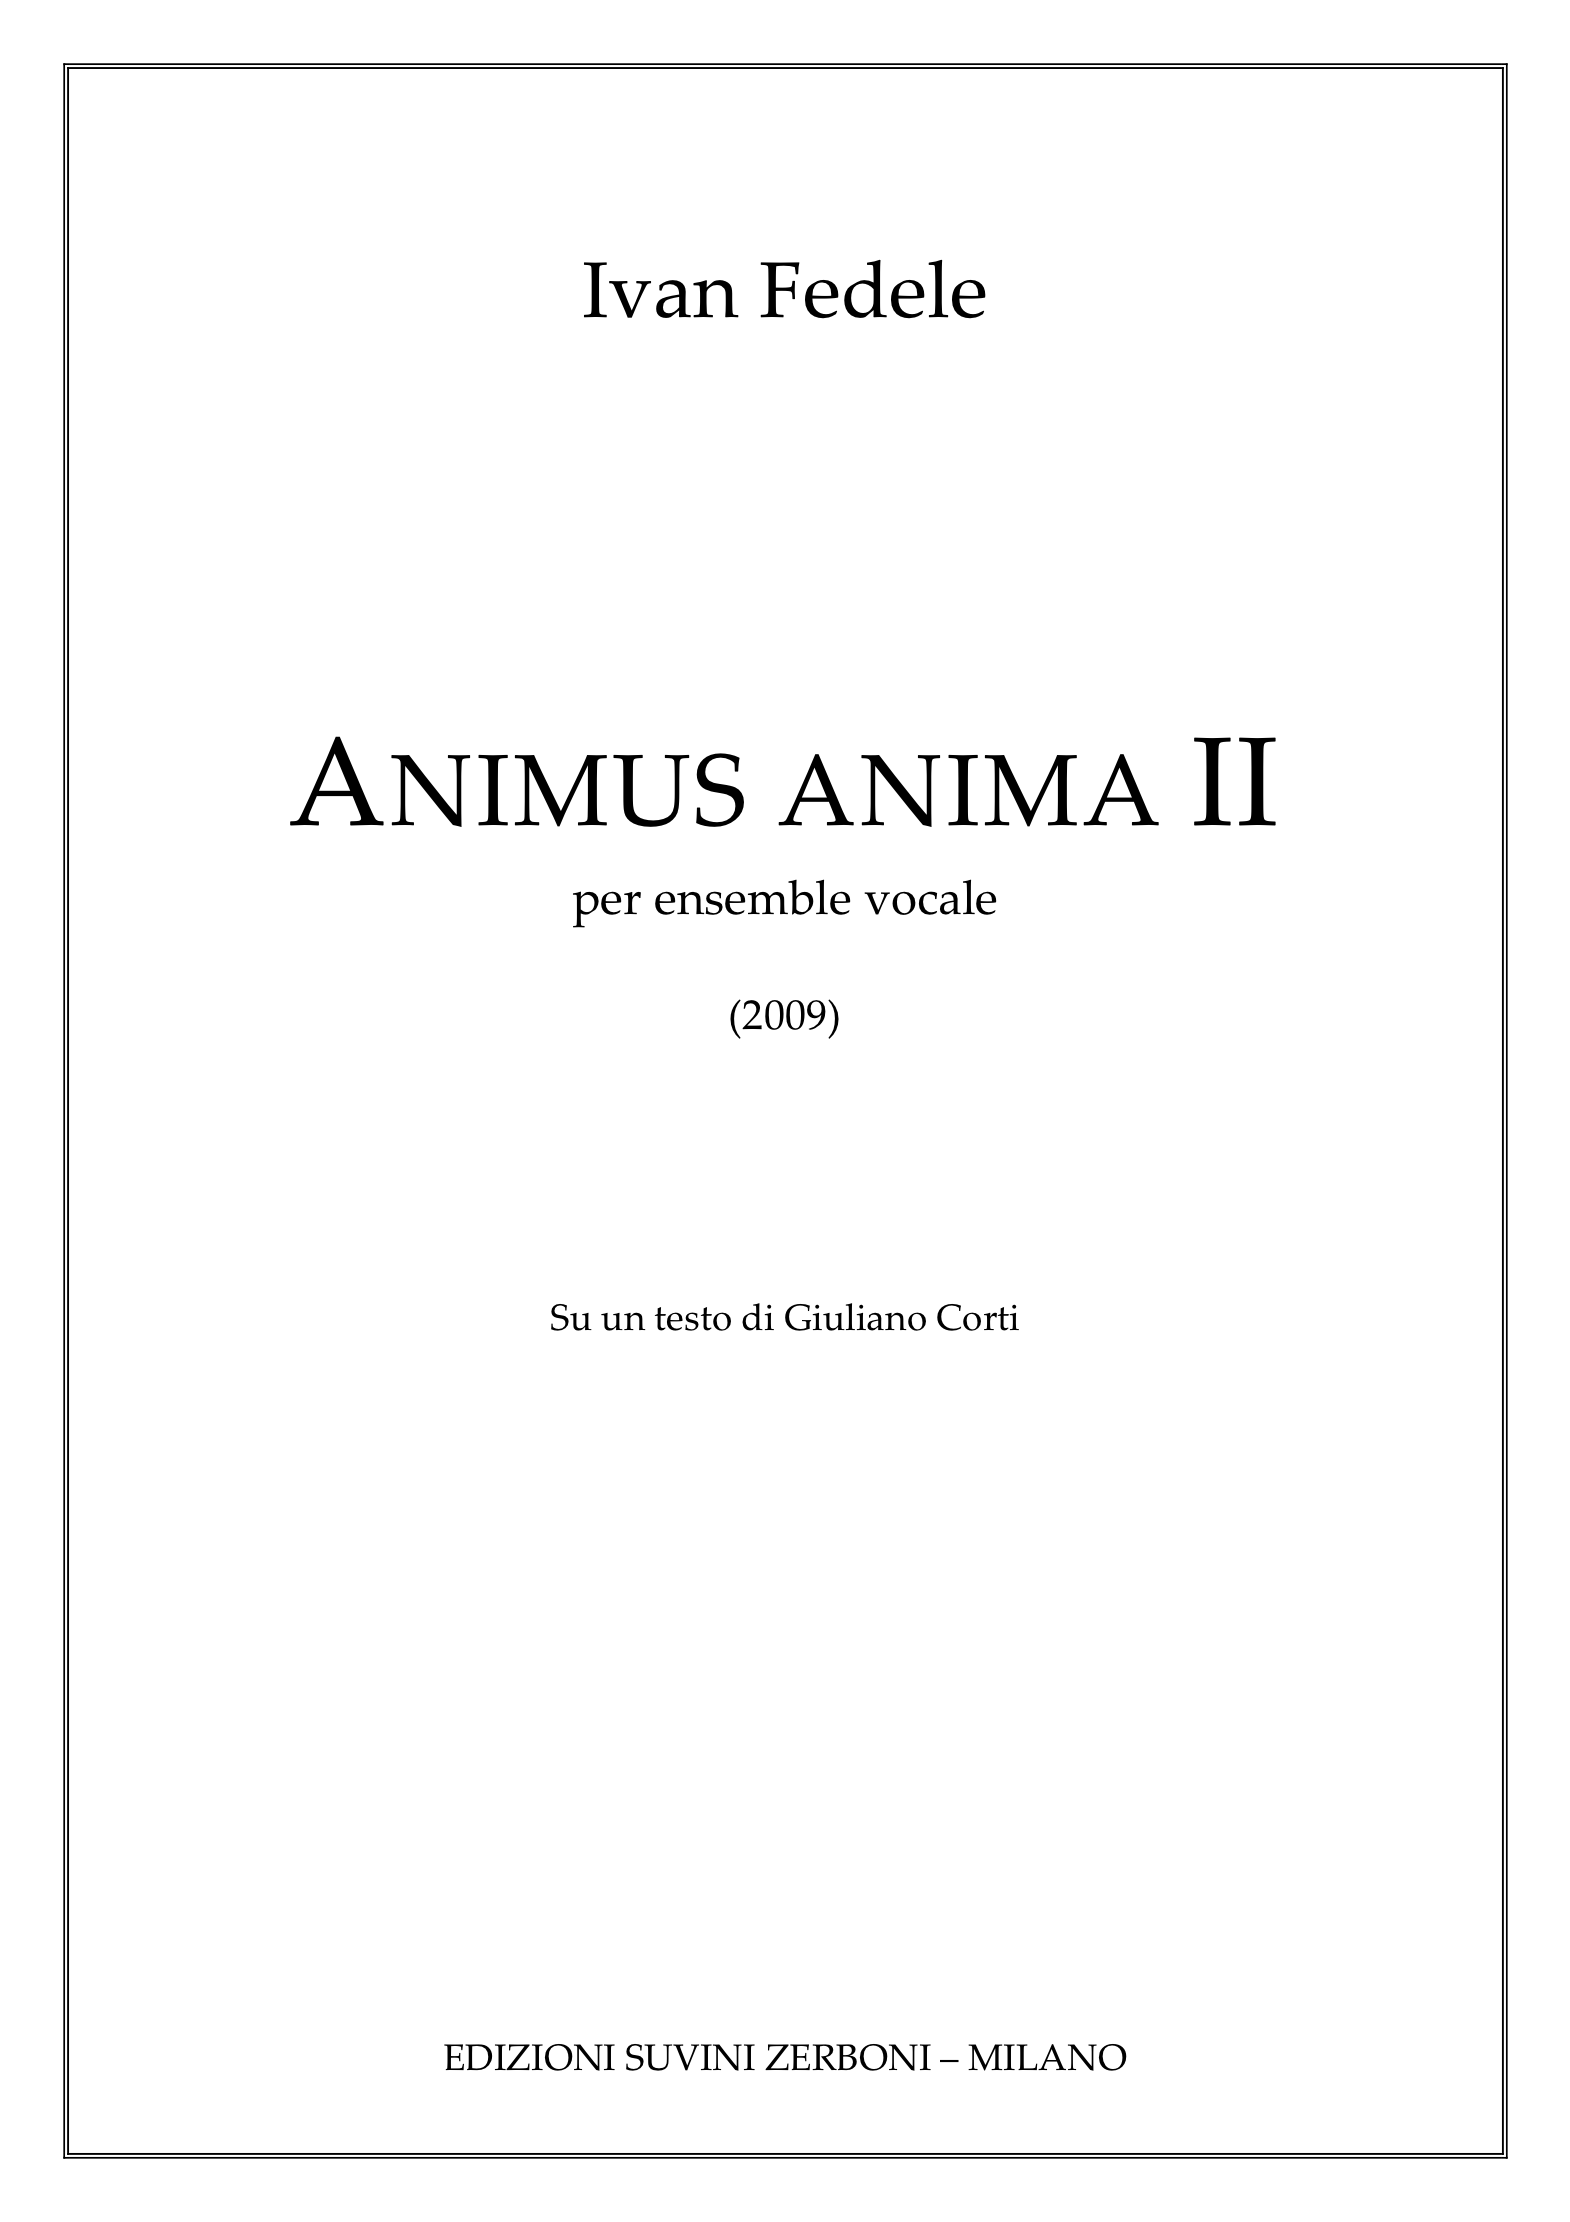 ANIMUS ANIMA II_Fedele 1